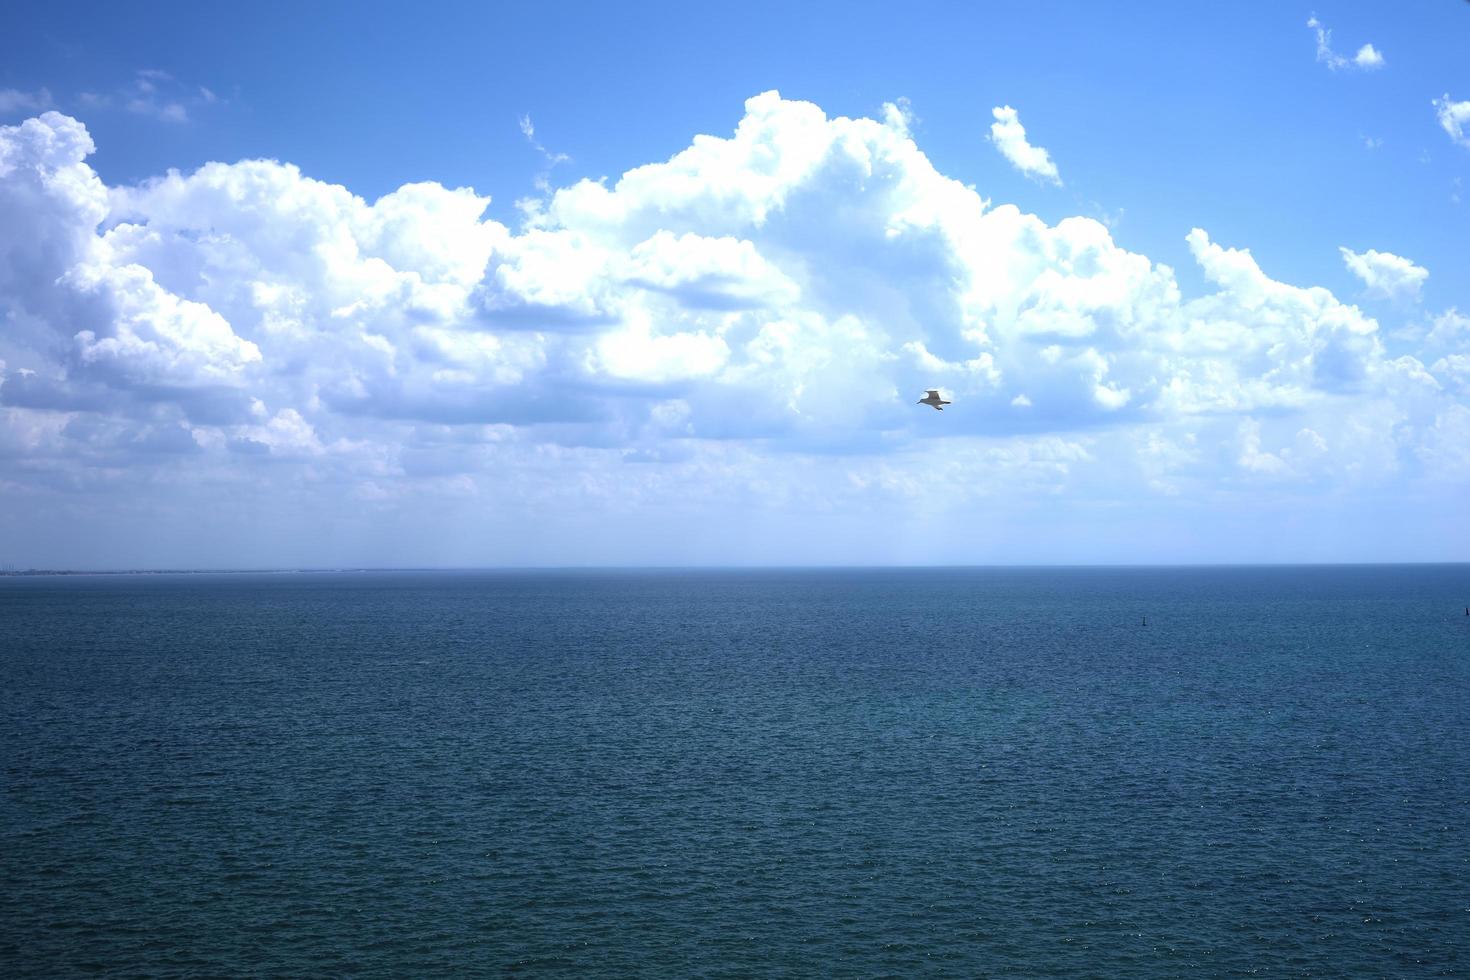 paisagem marinha de corpo d'água e céu com nuvens brancas fofas foto